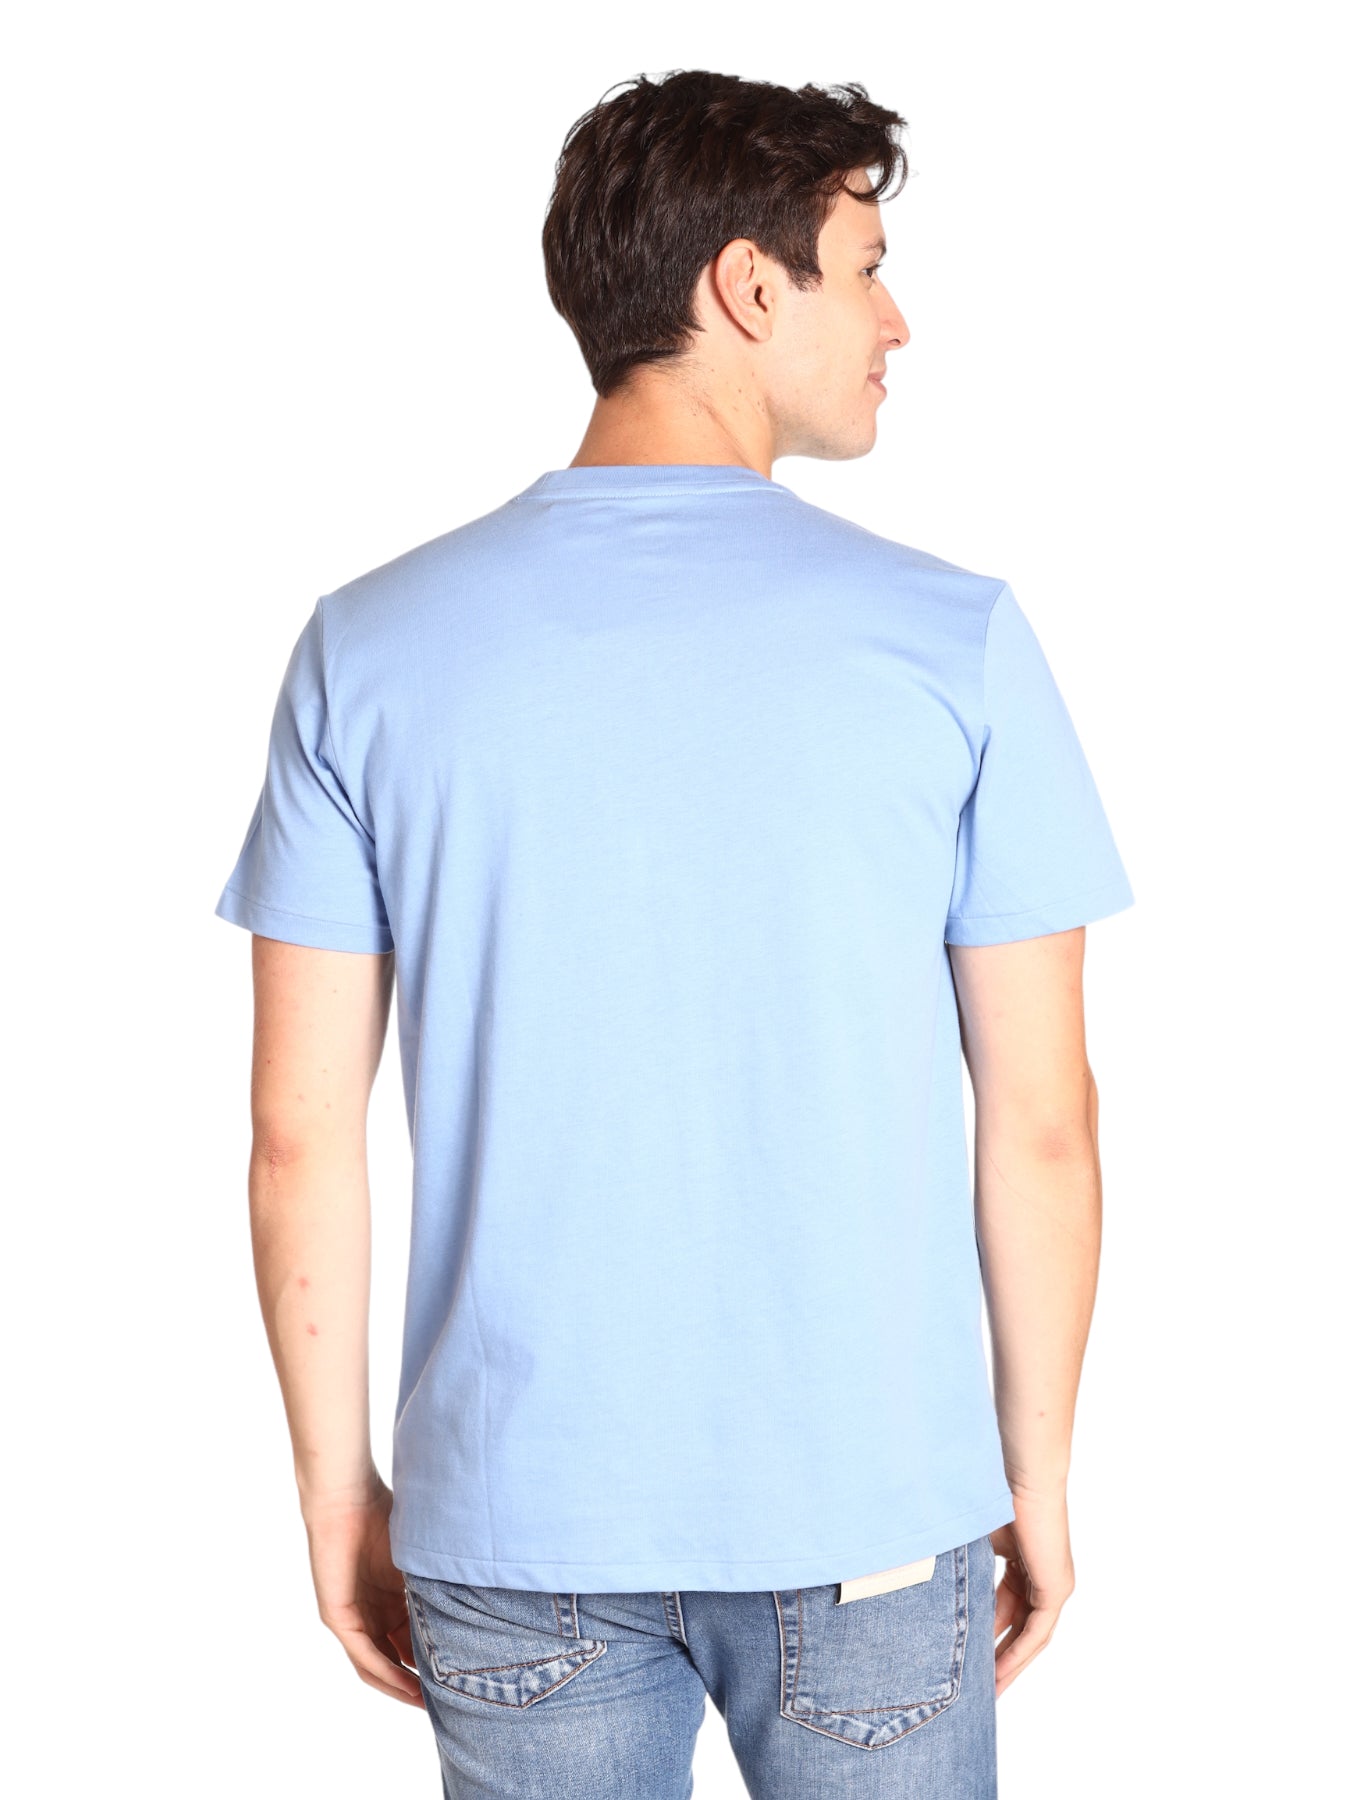 Polo Ralph Lauren T-Shirt 714899613011 Sky Blue